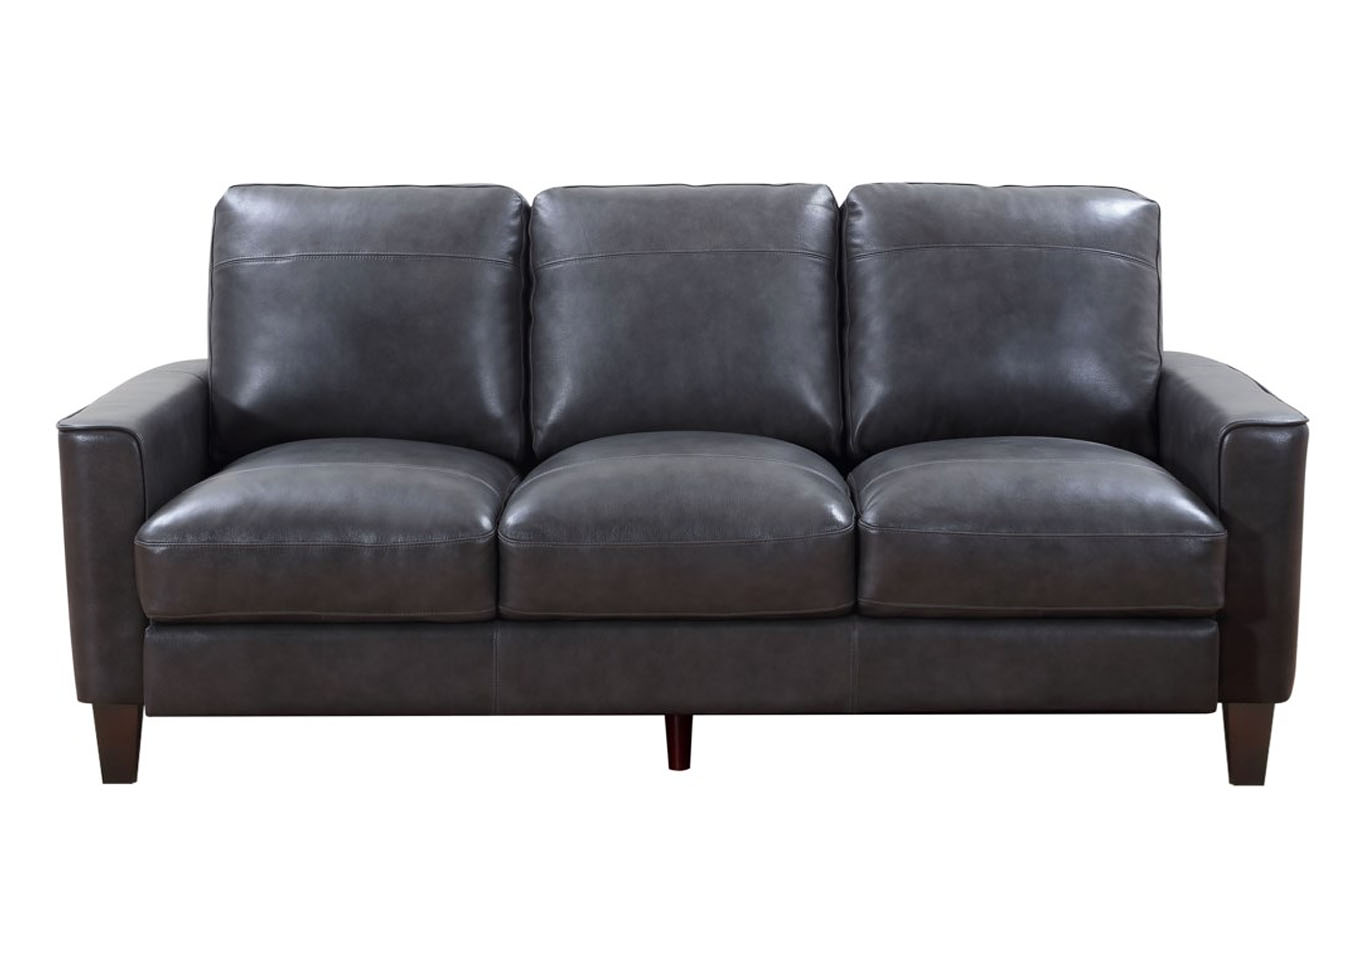 Chino Top Grain Leather Sofa - Gray,Instore